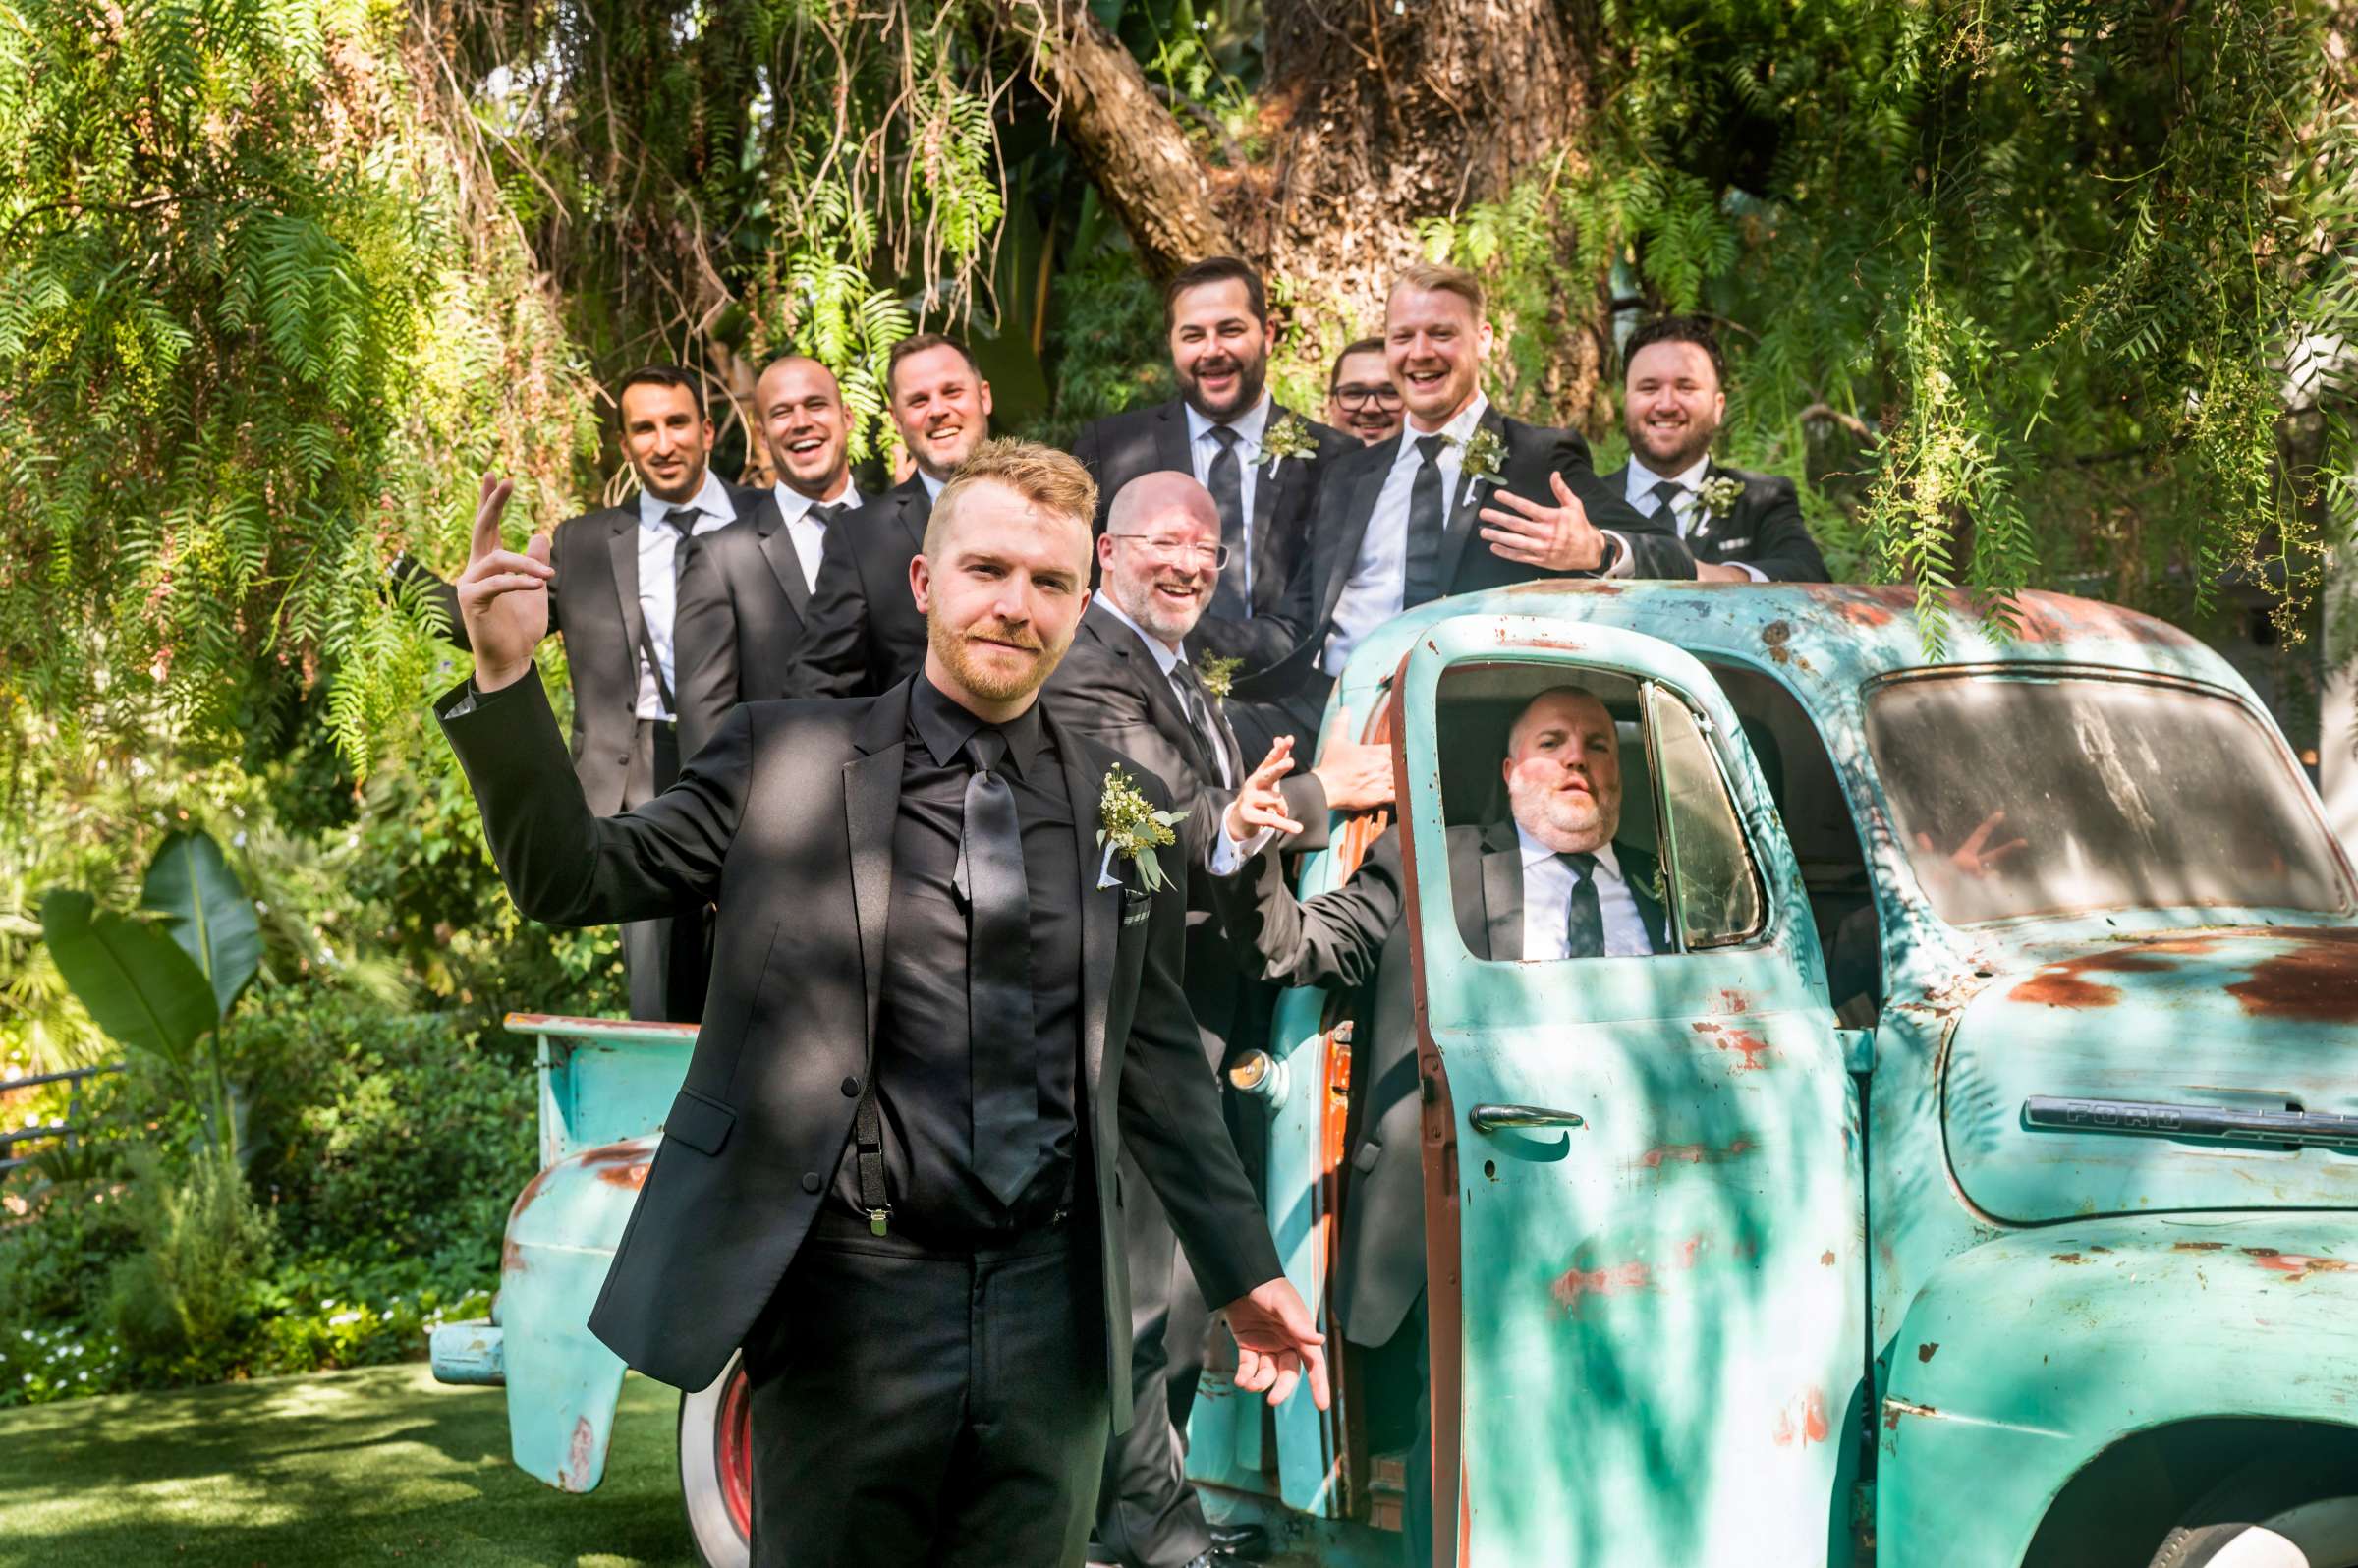 Green Gables Wedding Estate Wedding, Tiffanie and Daniel Wedding Photo #6 by True Photography